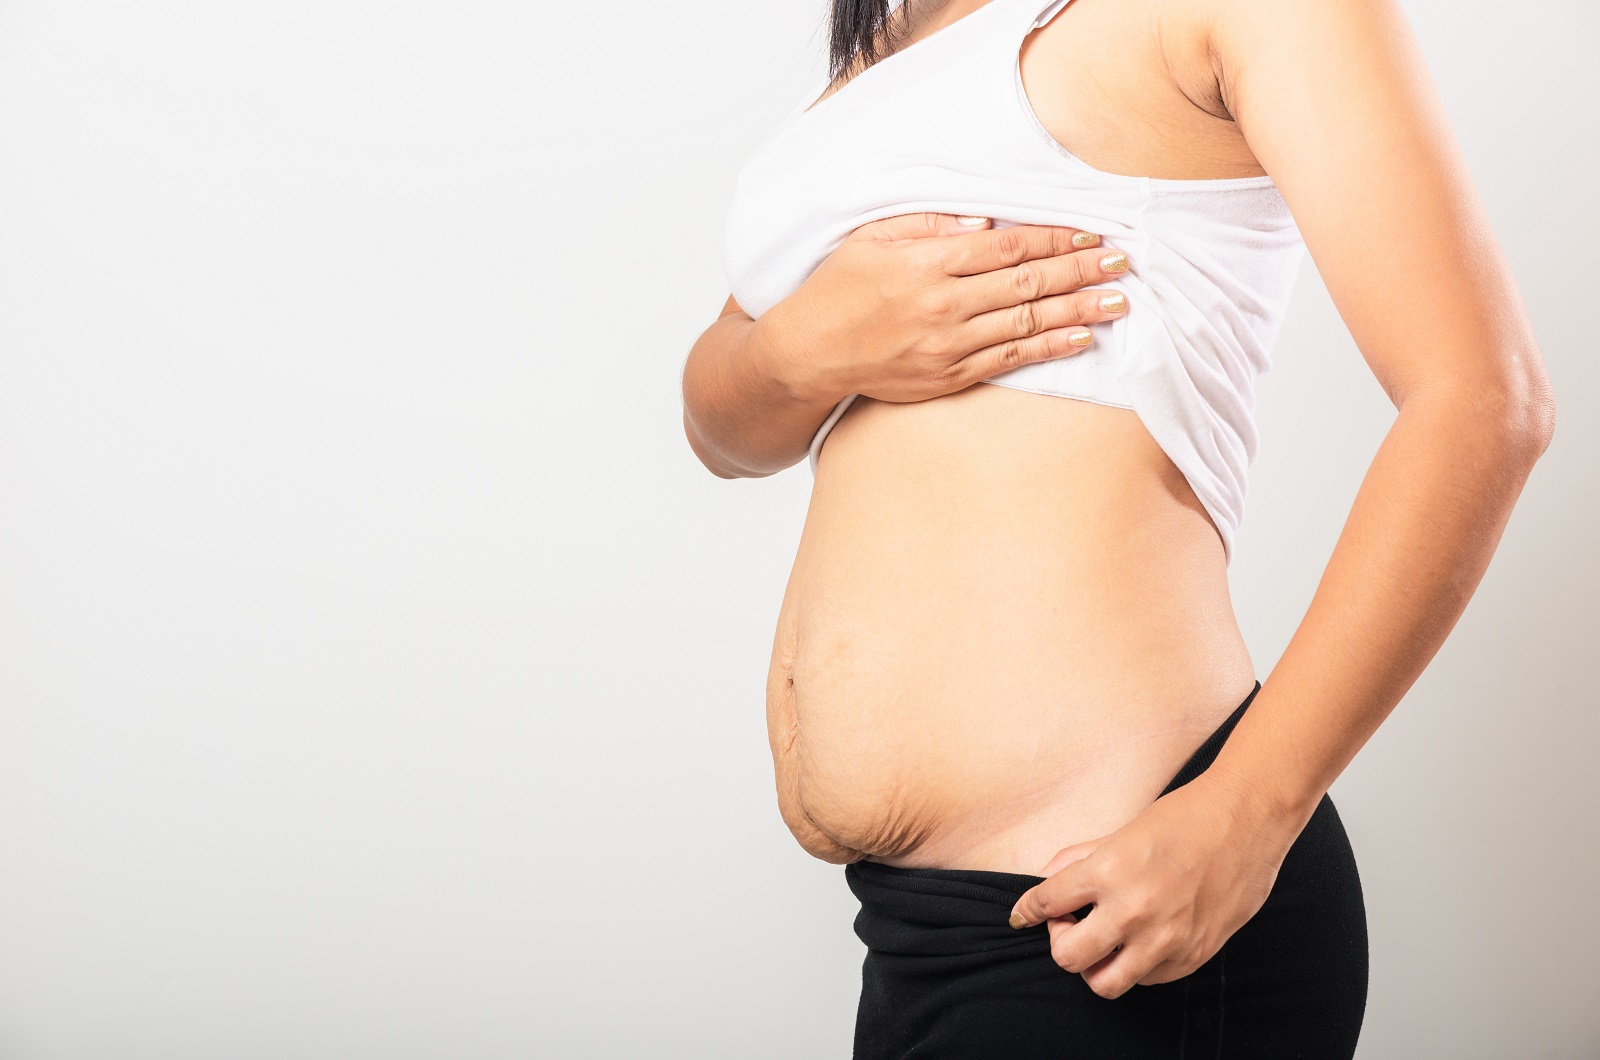 Pancera in gravidanza si o no: quando utilizzarla e tutti i benefici